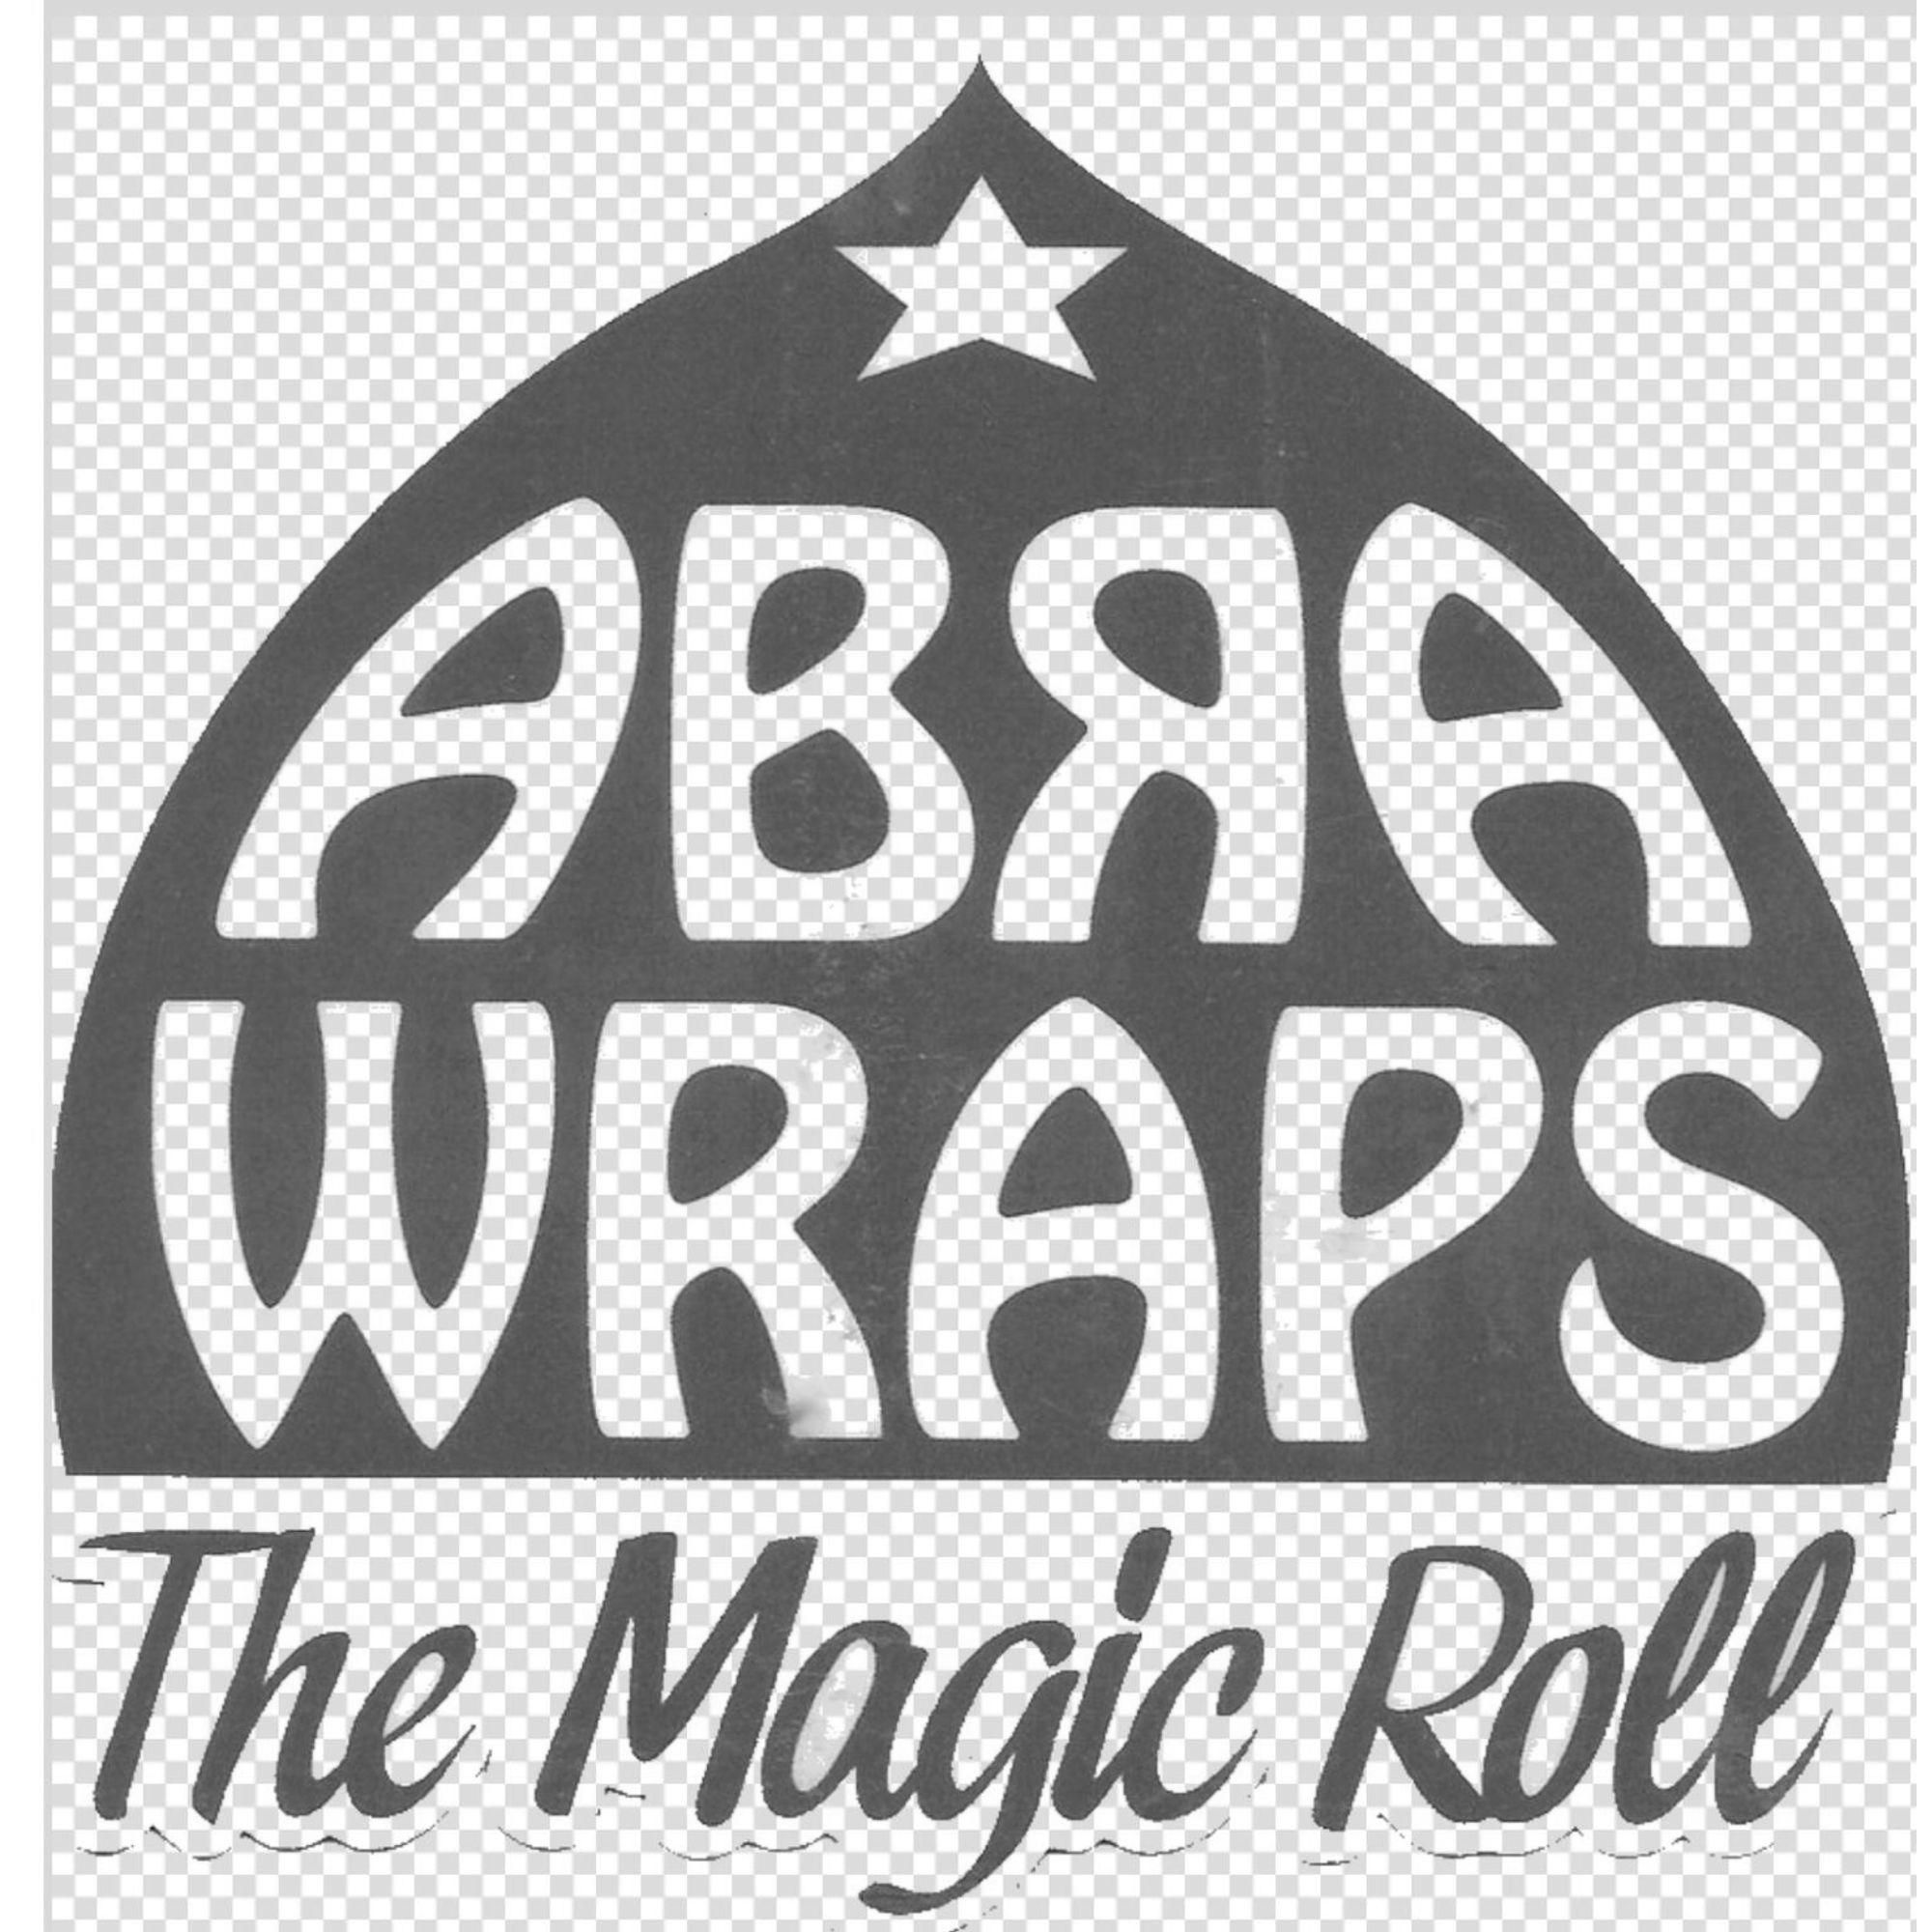 Abra Wraps